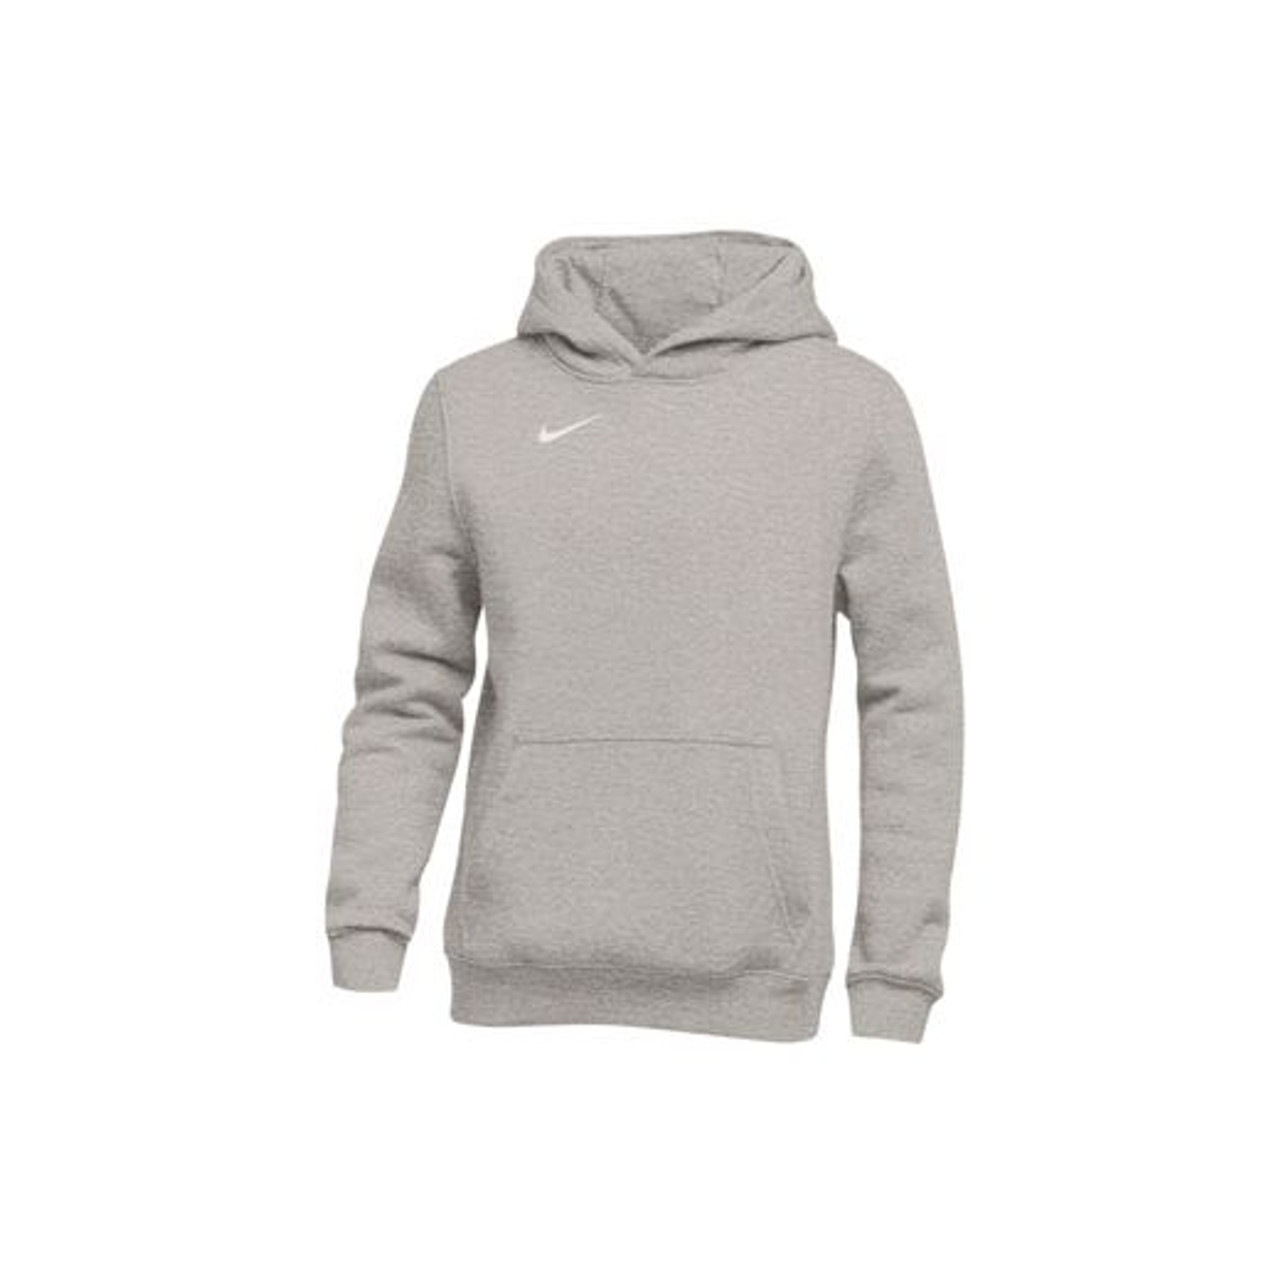 dark grey heather nike hoodie